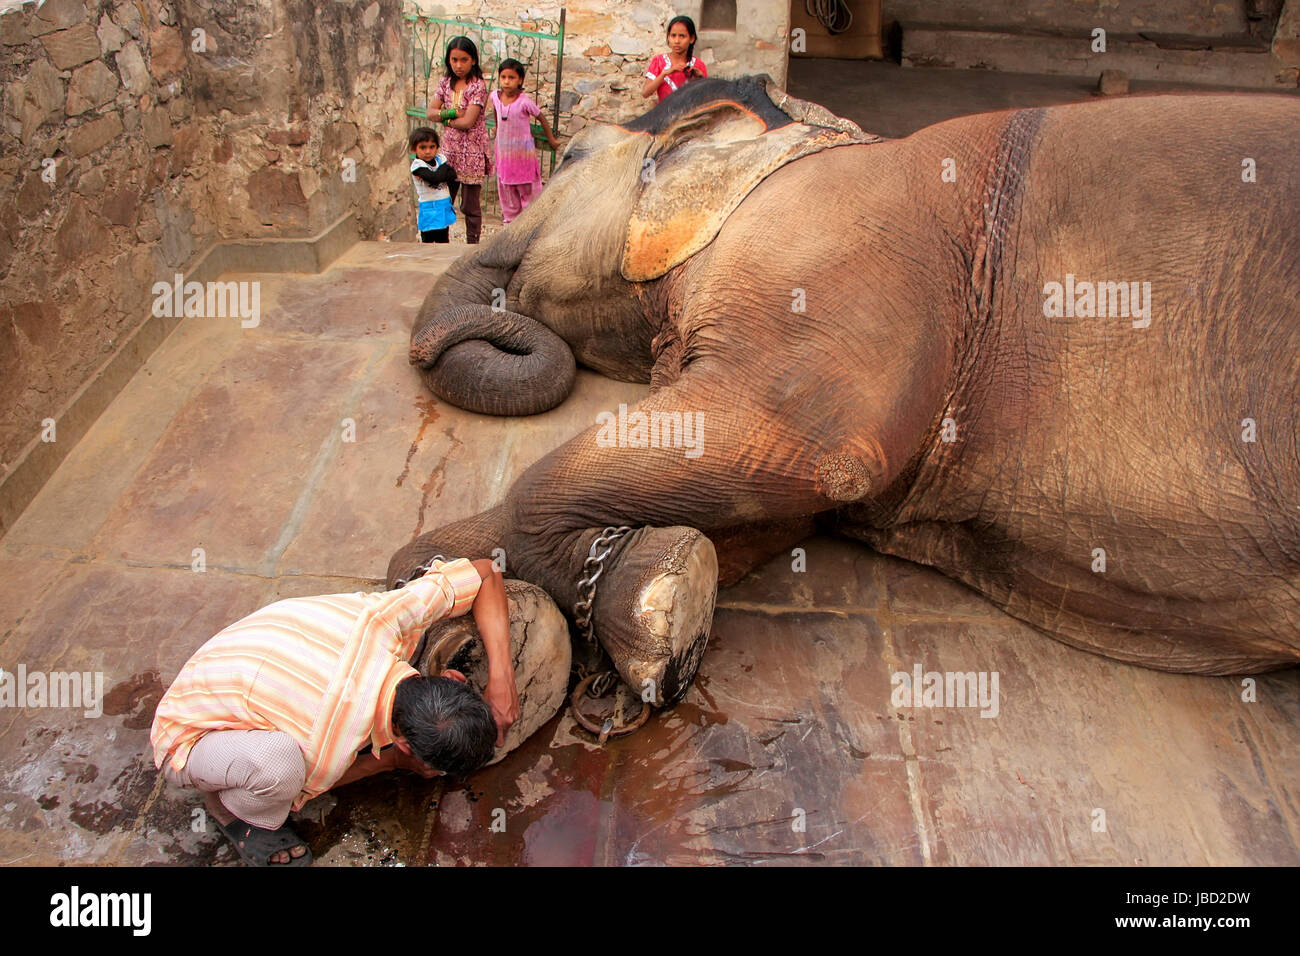 Nettoyage gardien local pied d'éléphant à petits quarts d'éléphant à Jaipur, Rajasthan, Inde. Les éléphants sont utilisés pour des manèges et autres activités touristiques Banque D'Images